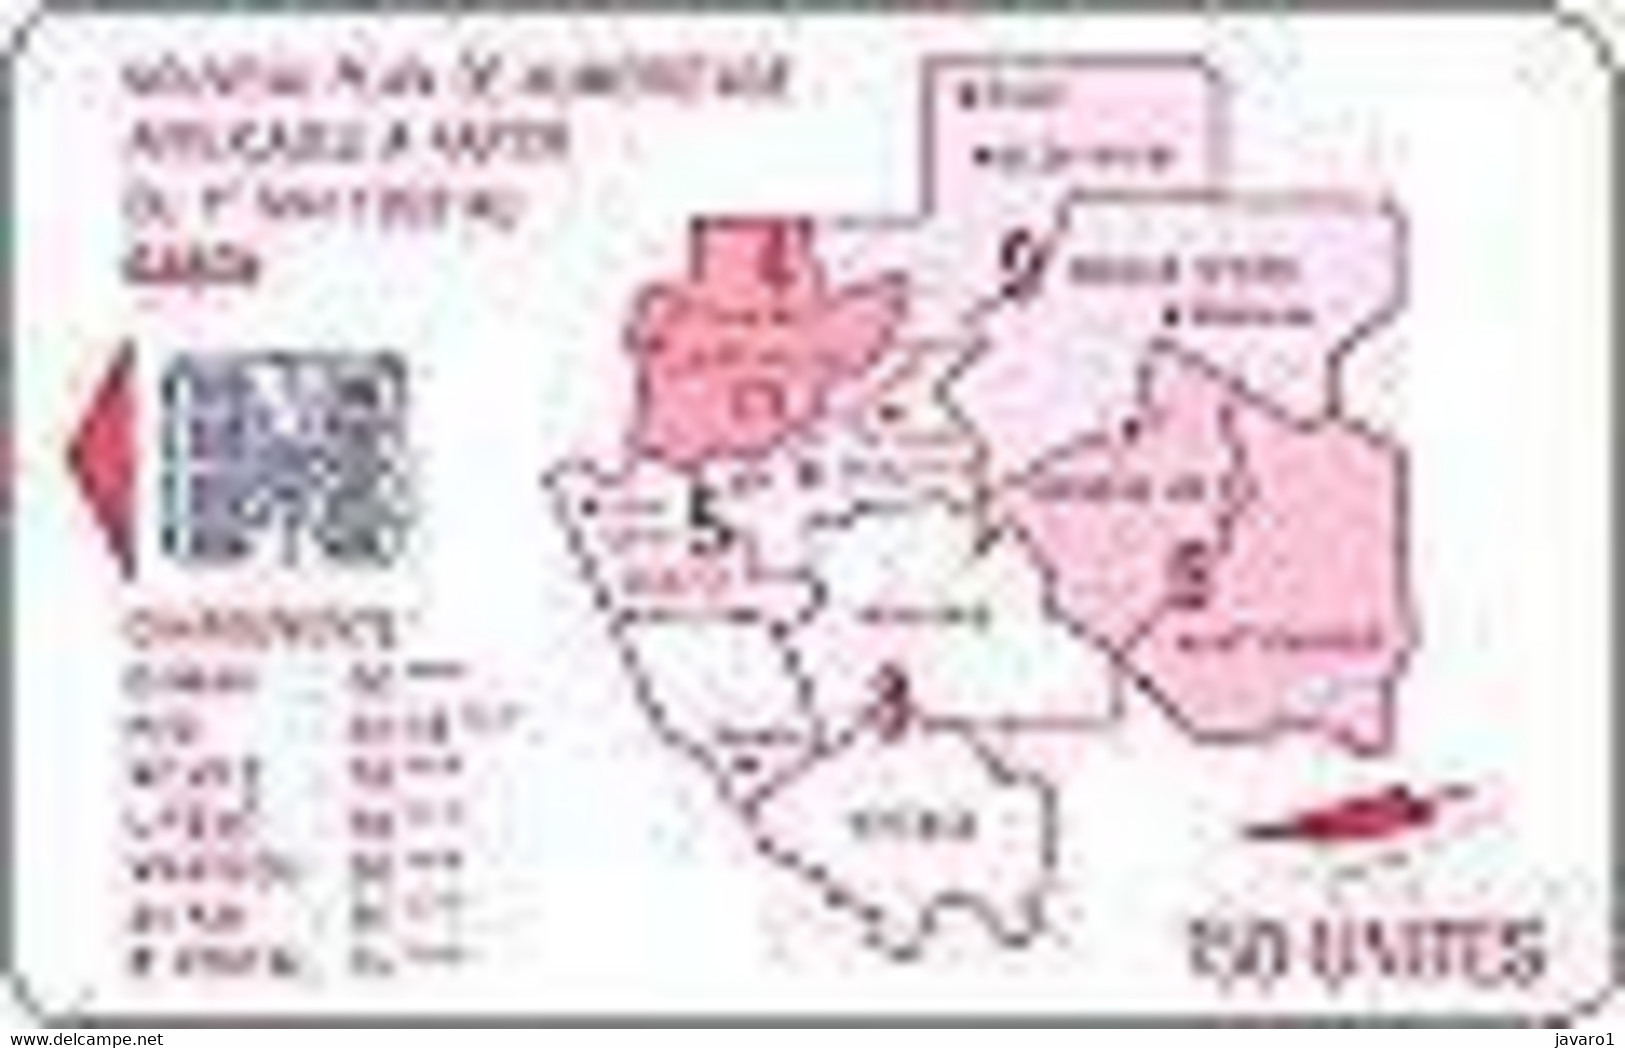 GABON : GAB30A 150 SI-7 Map 1er MAI 1993 Red (rev.B) USED - Gabon